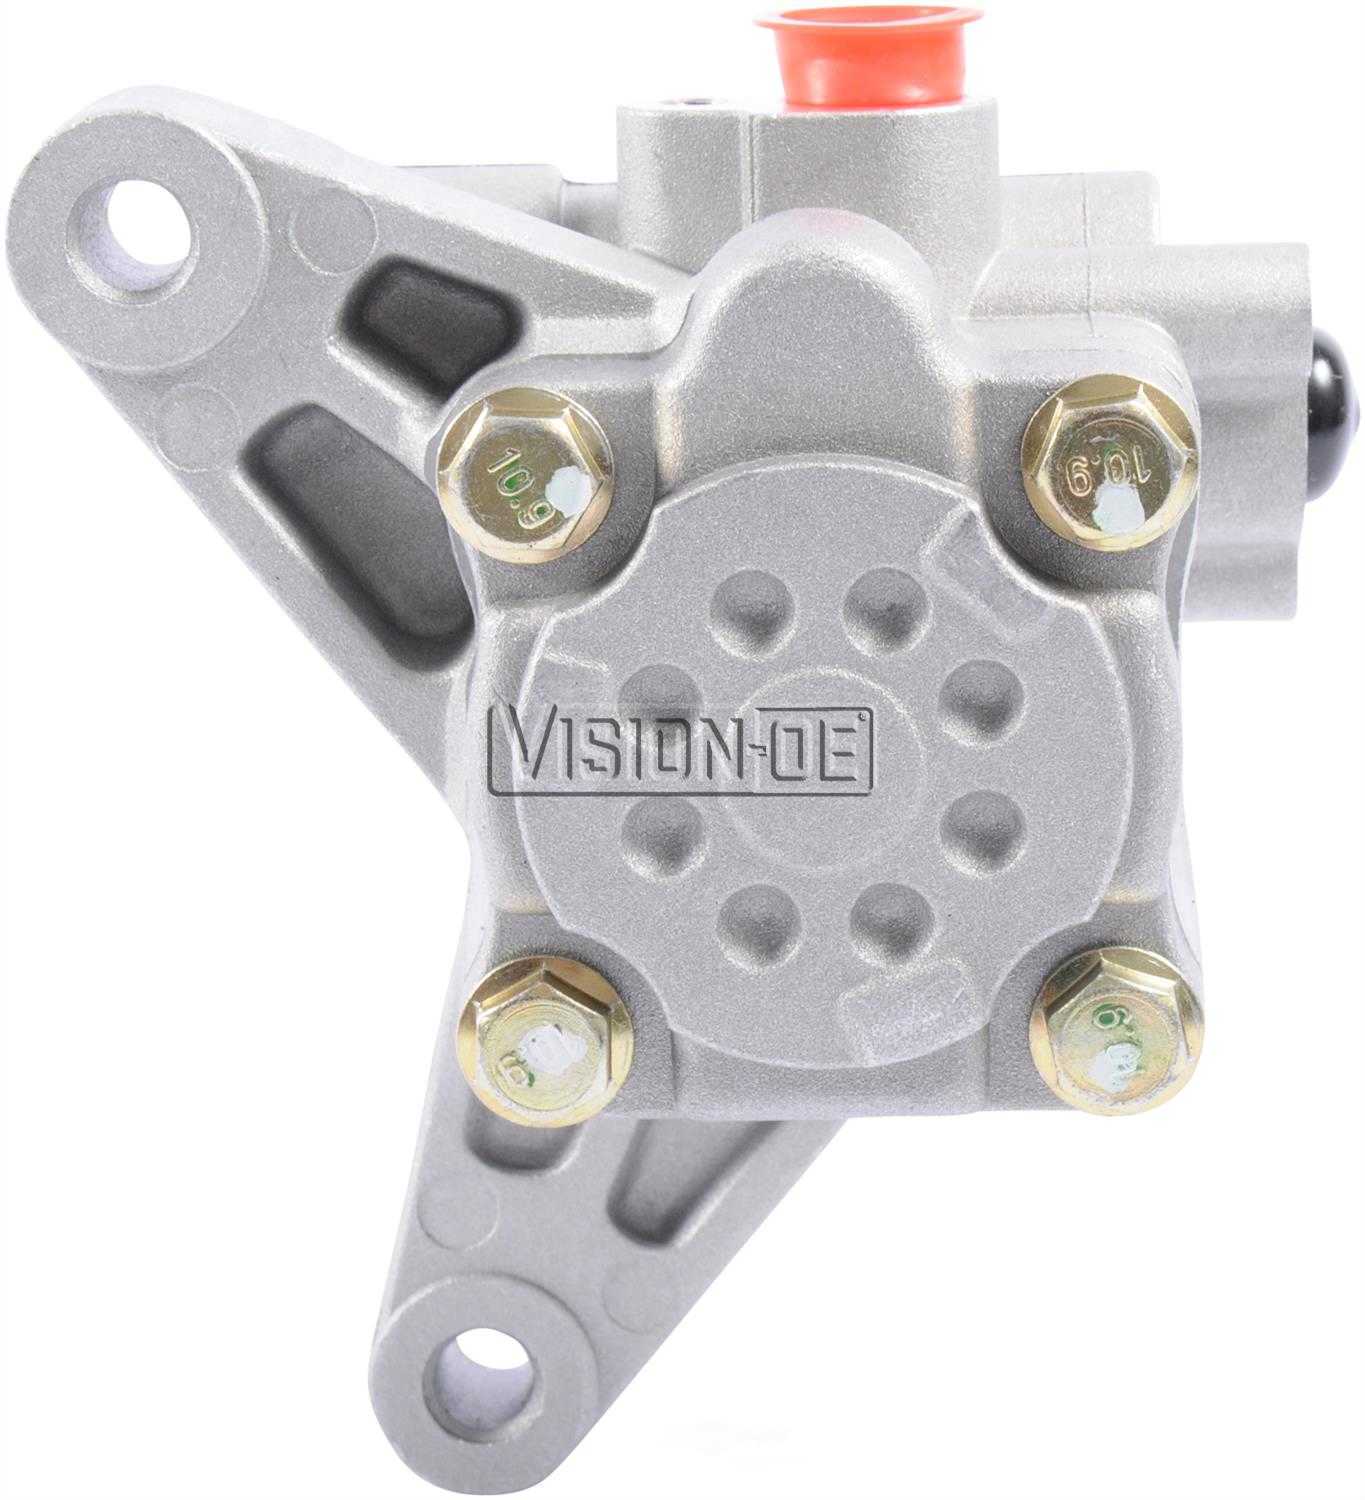 VISION-OE - New Power Steering Pump - VOE N990-0235